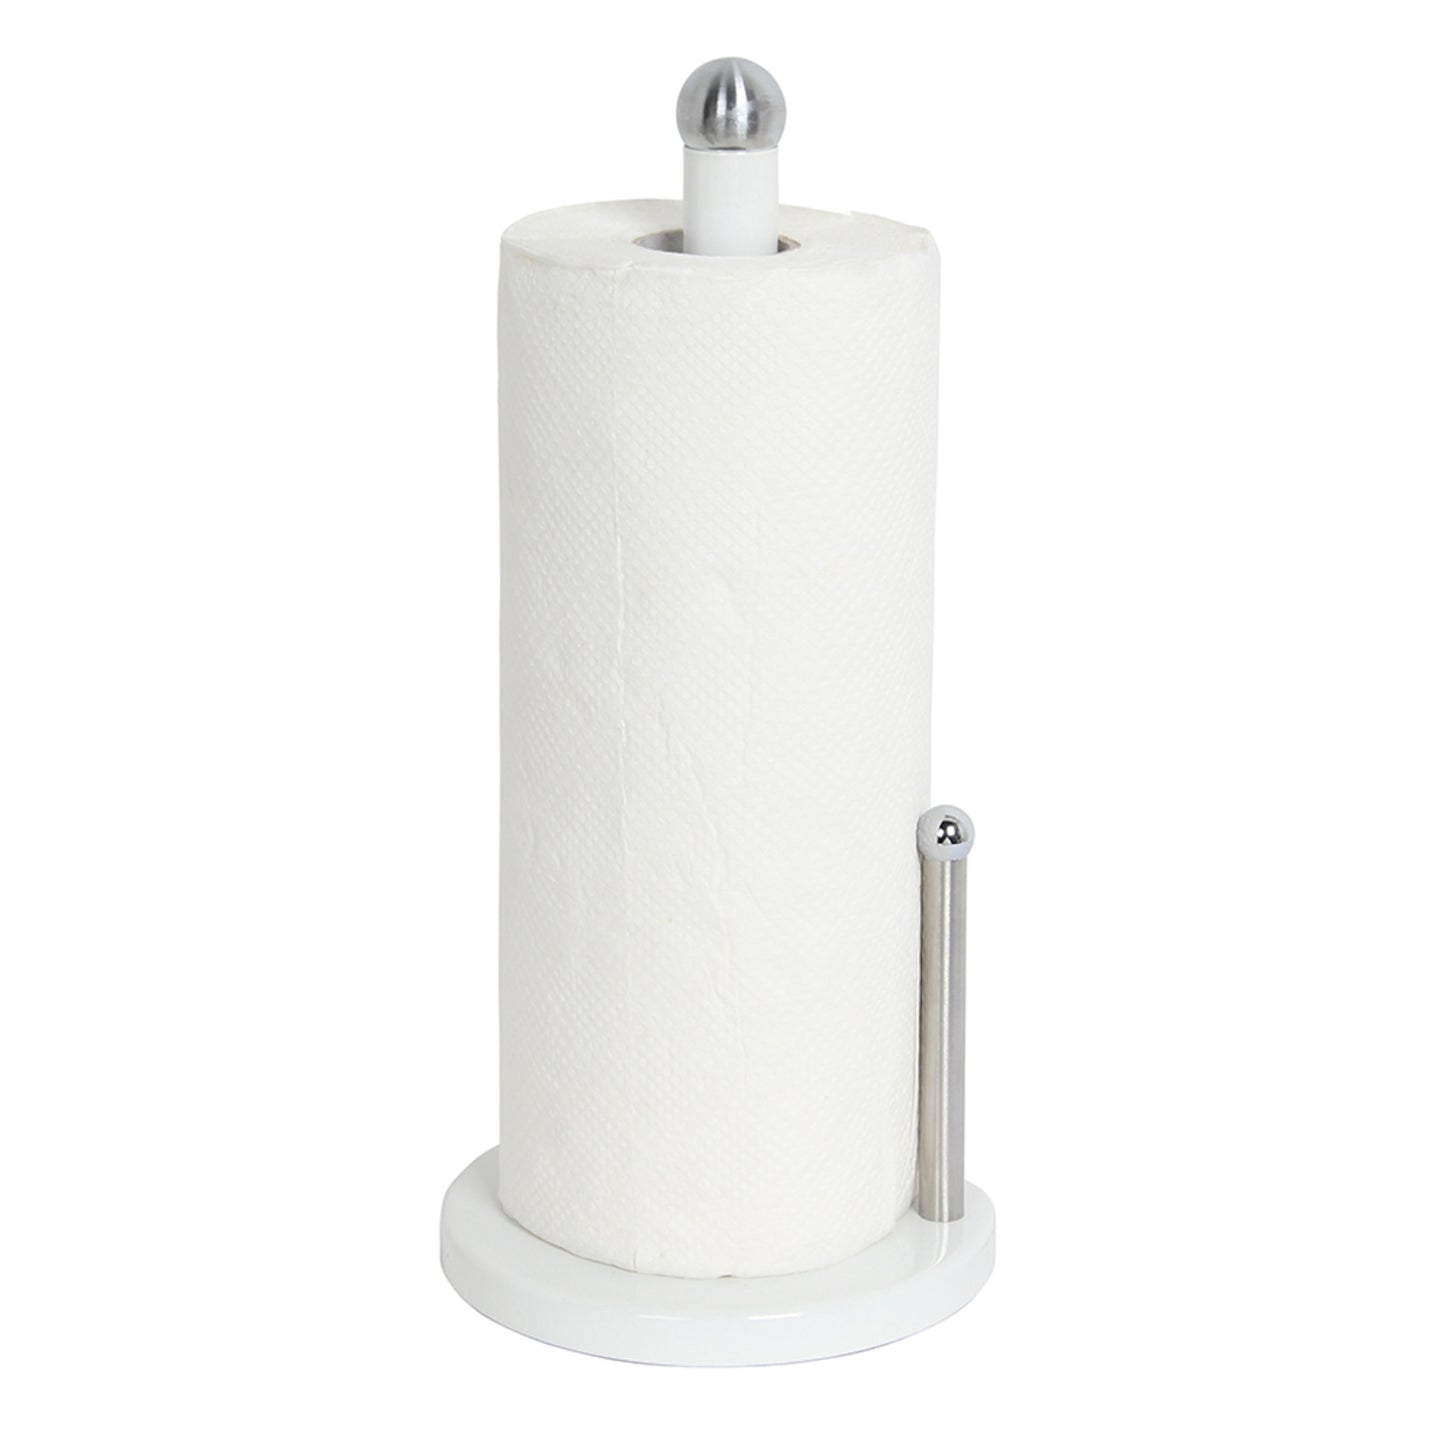 Home Basics Enamel Coated Steel Paper Towel Holder, White - White